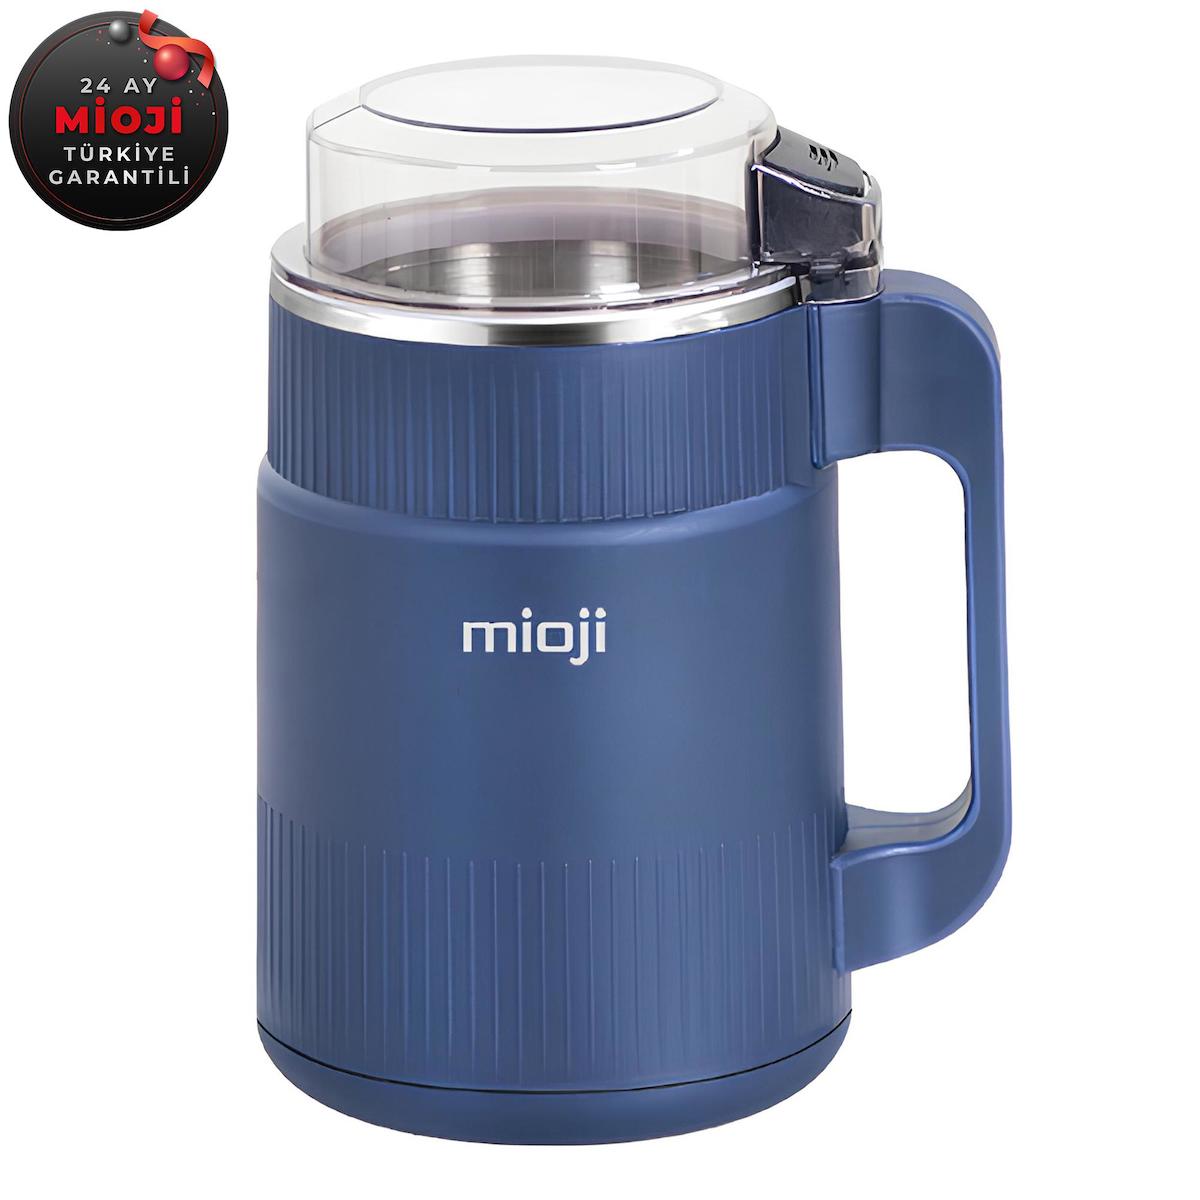 Mioji Mio CG34 Elektrikli Kahve Öğütücü Mavi